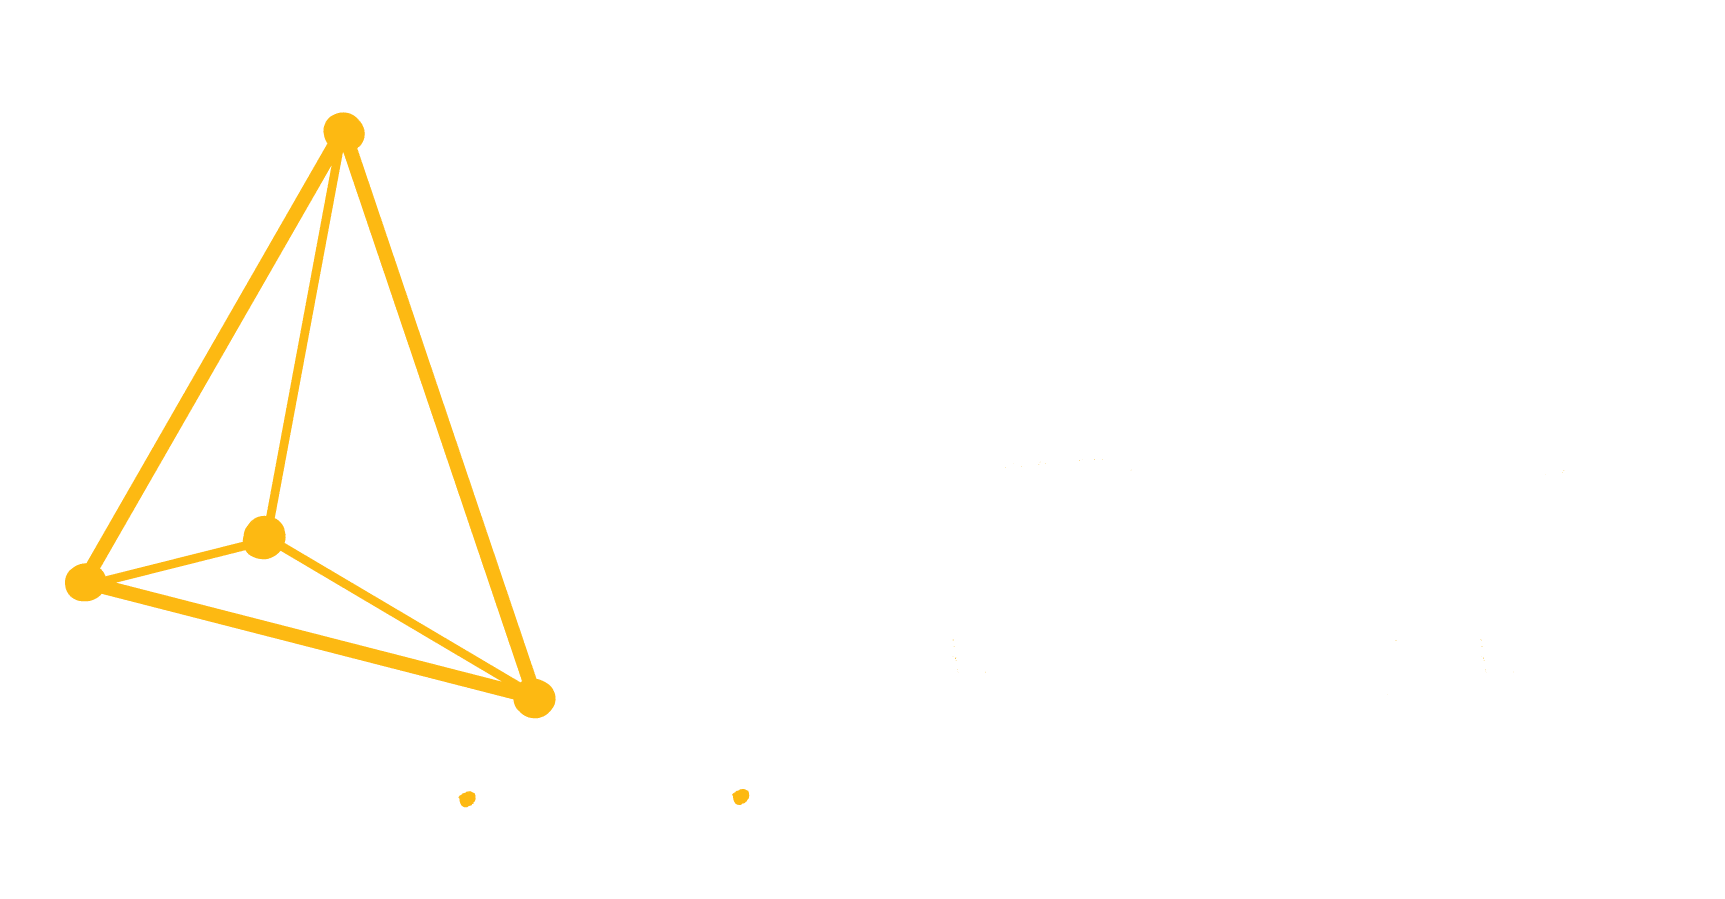 Ventura County Coast